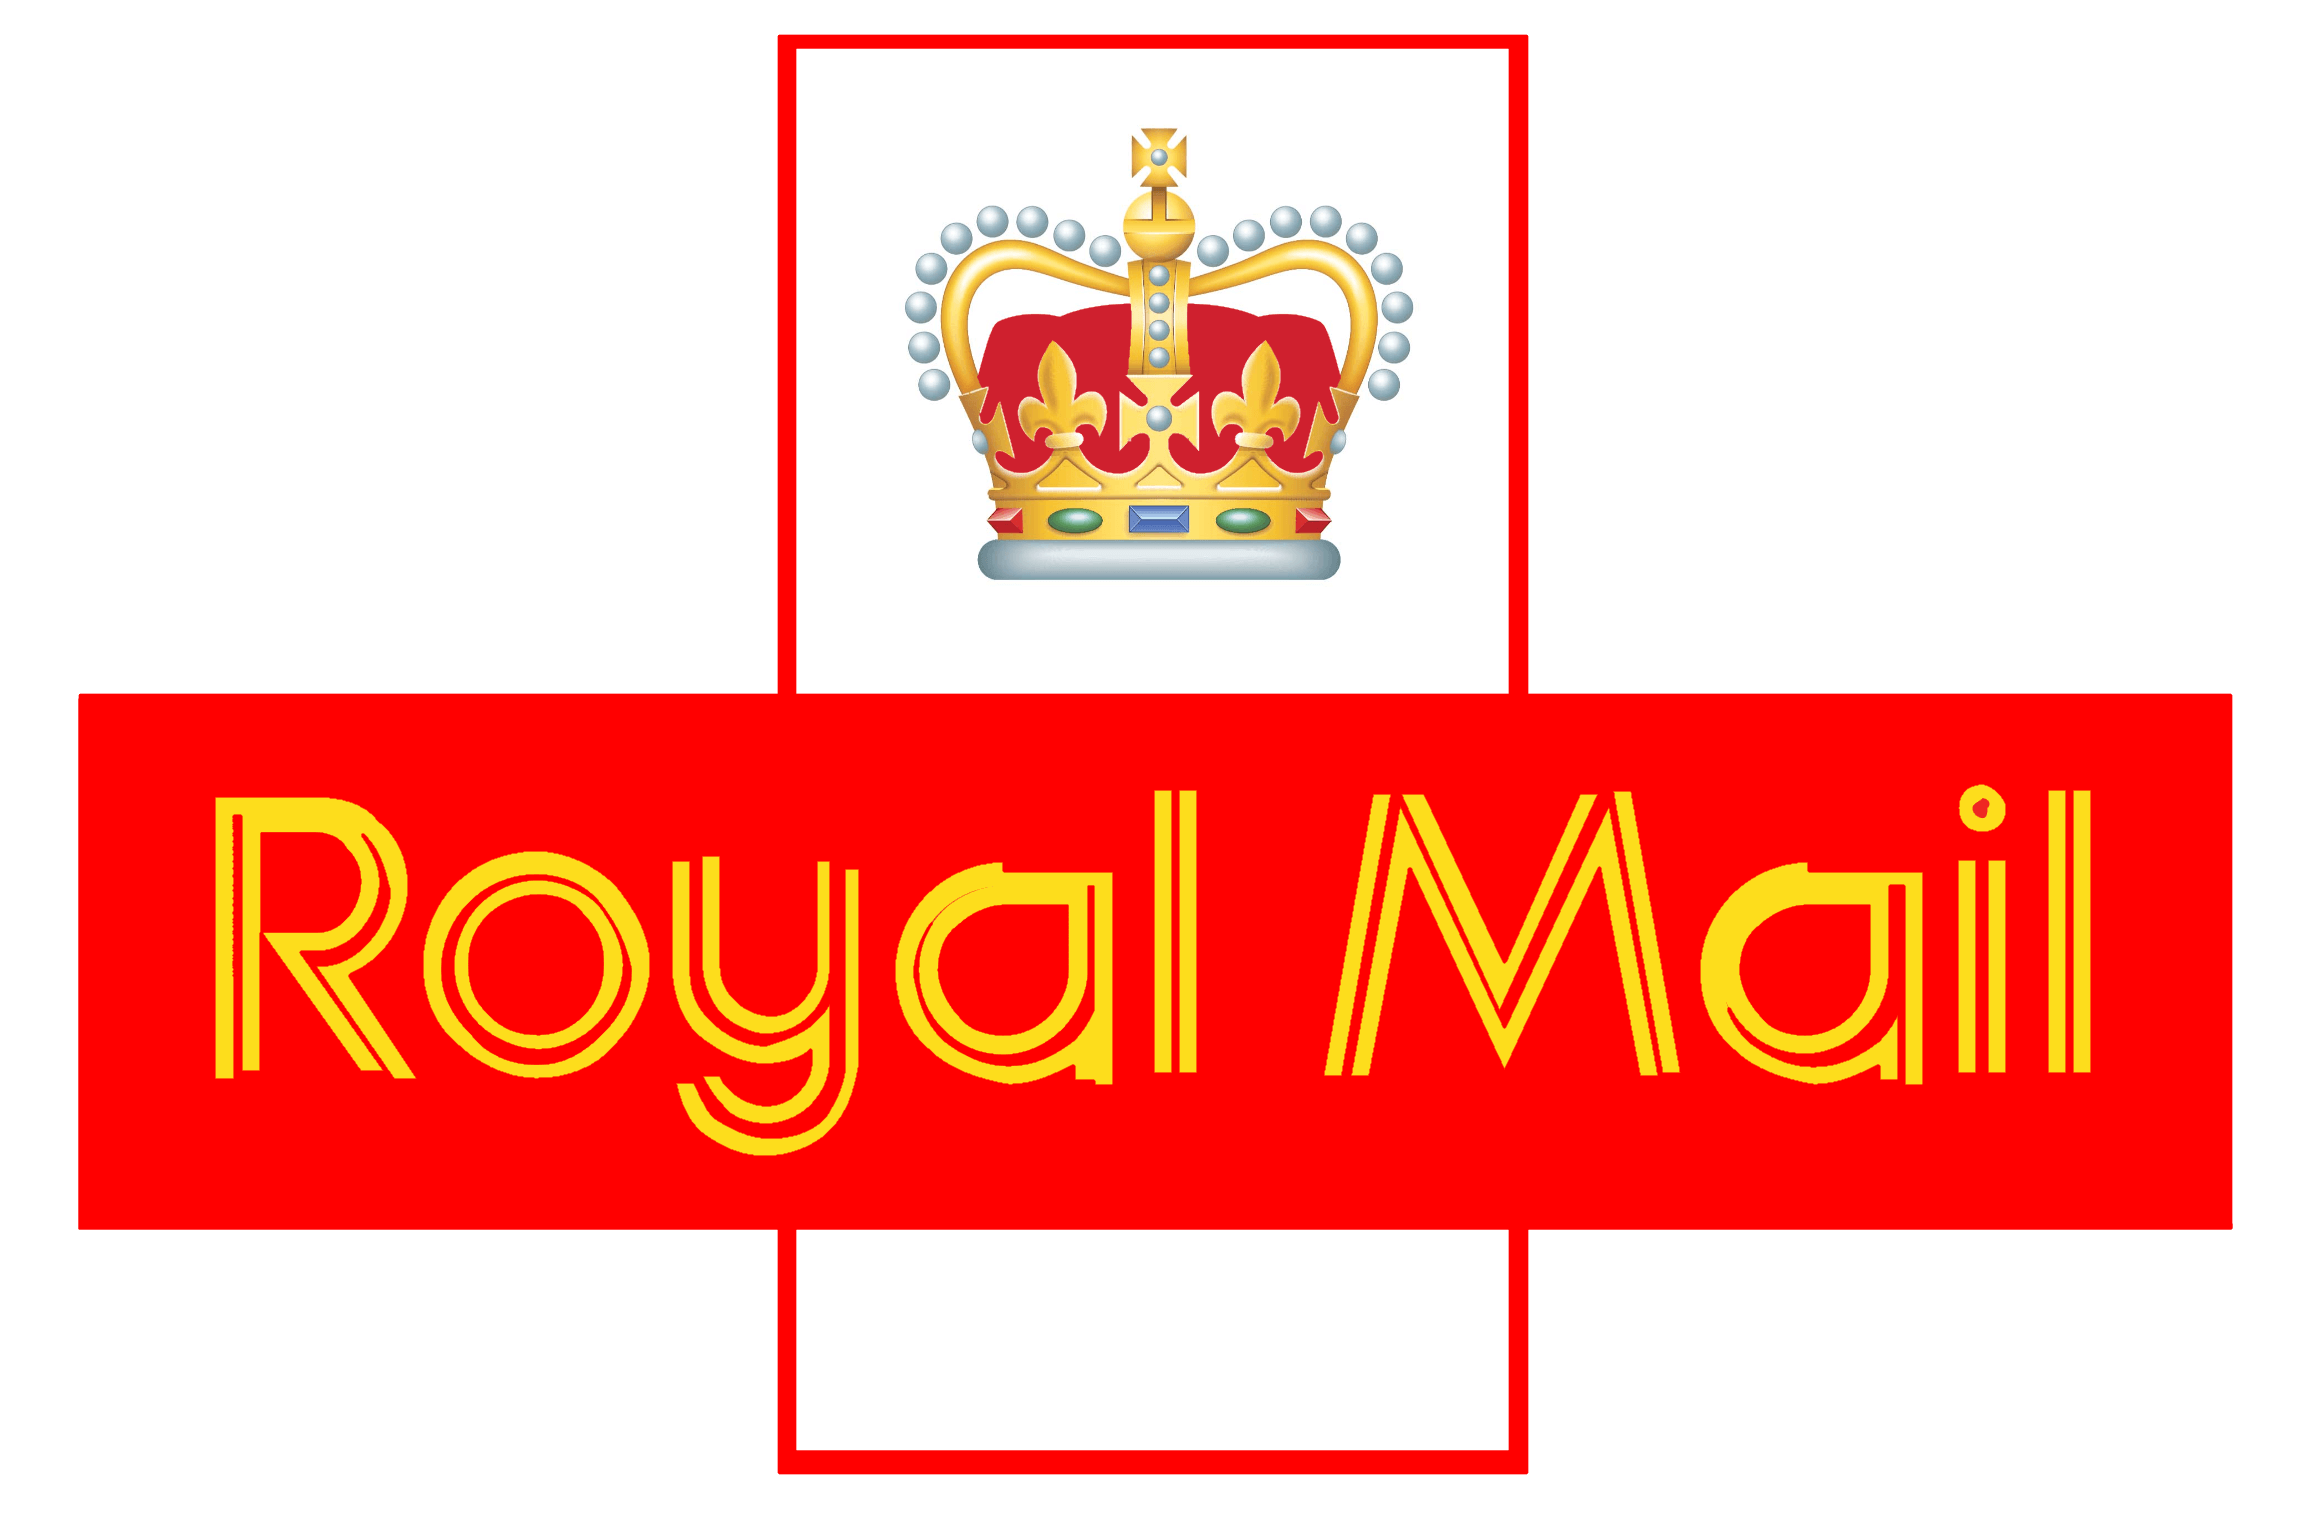 Royal Mail logo, logotype